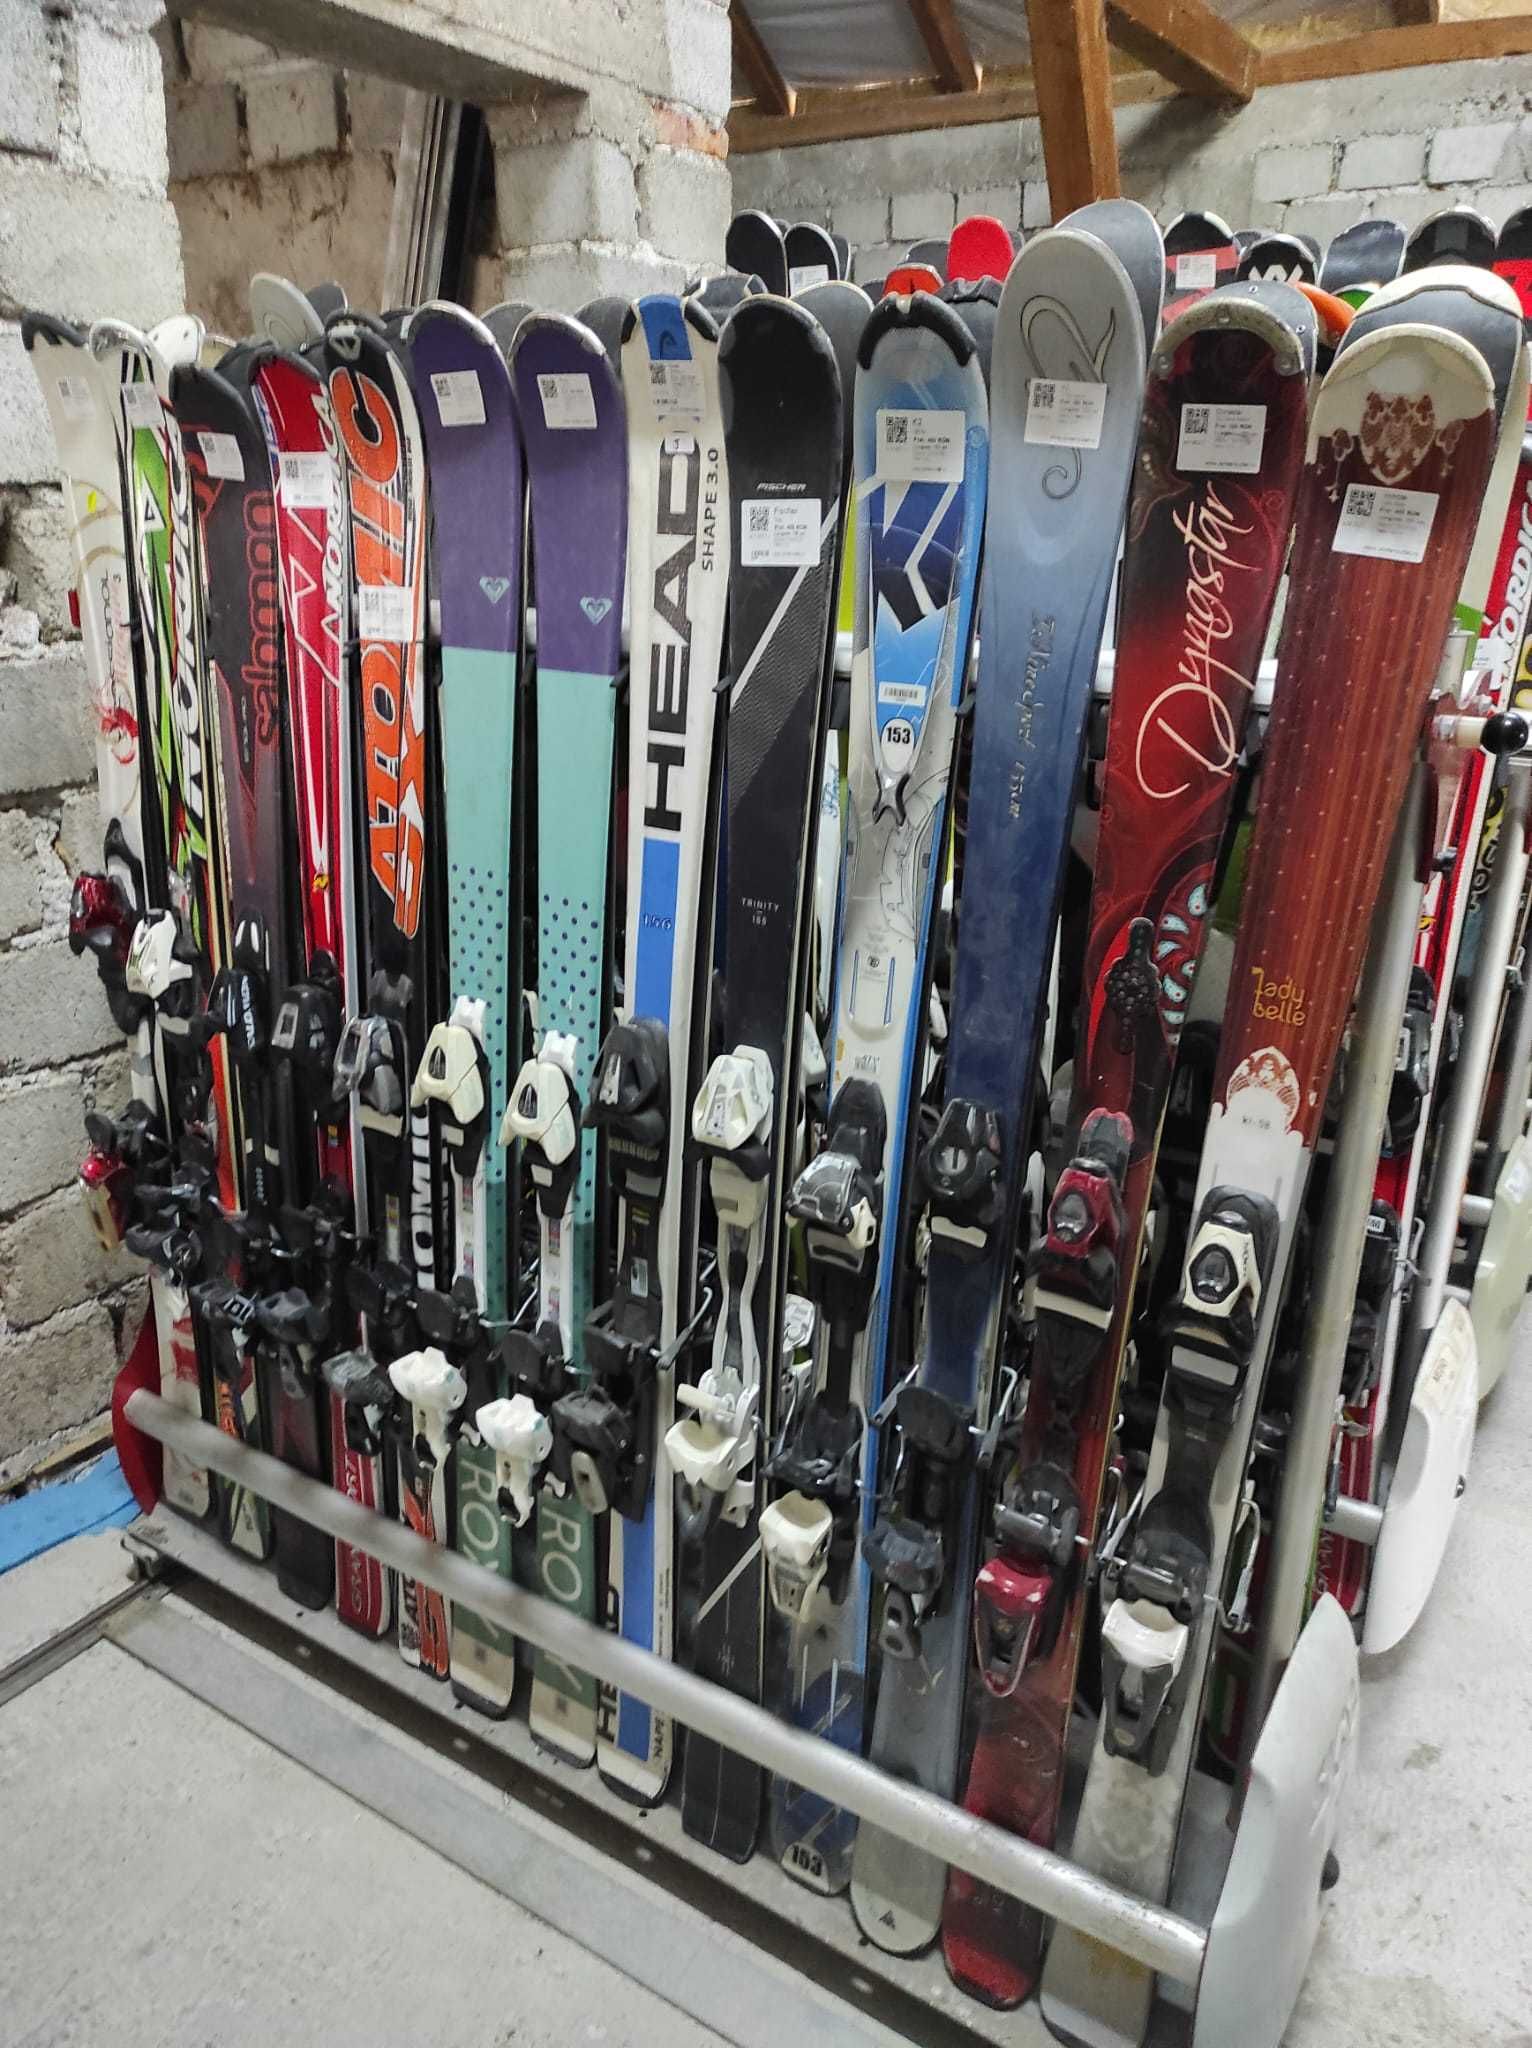 Un LOT de schiuri second hand, toate marimile